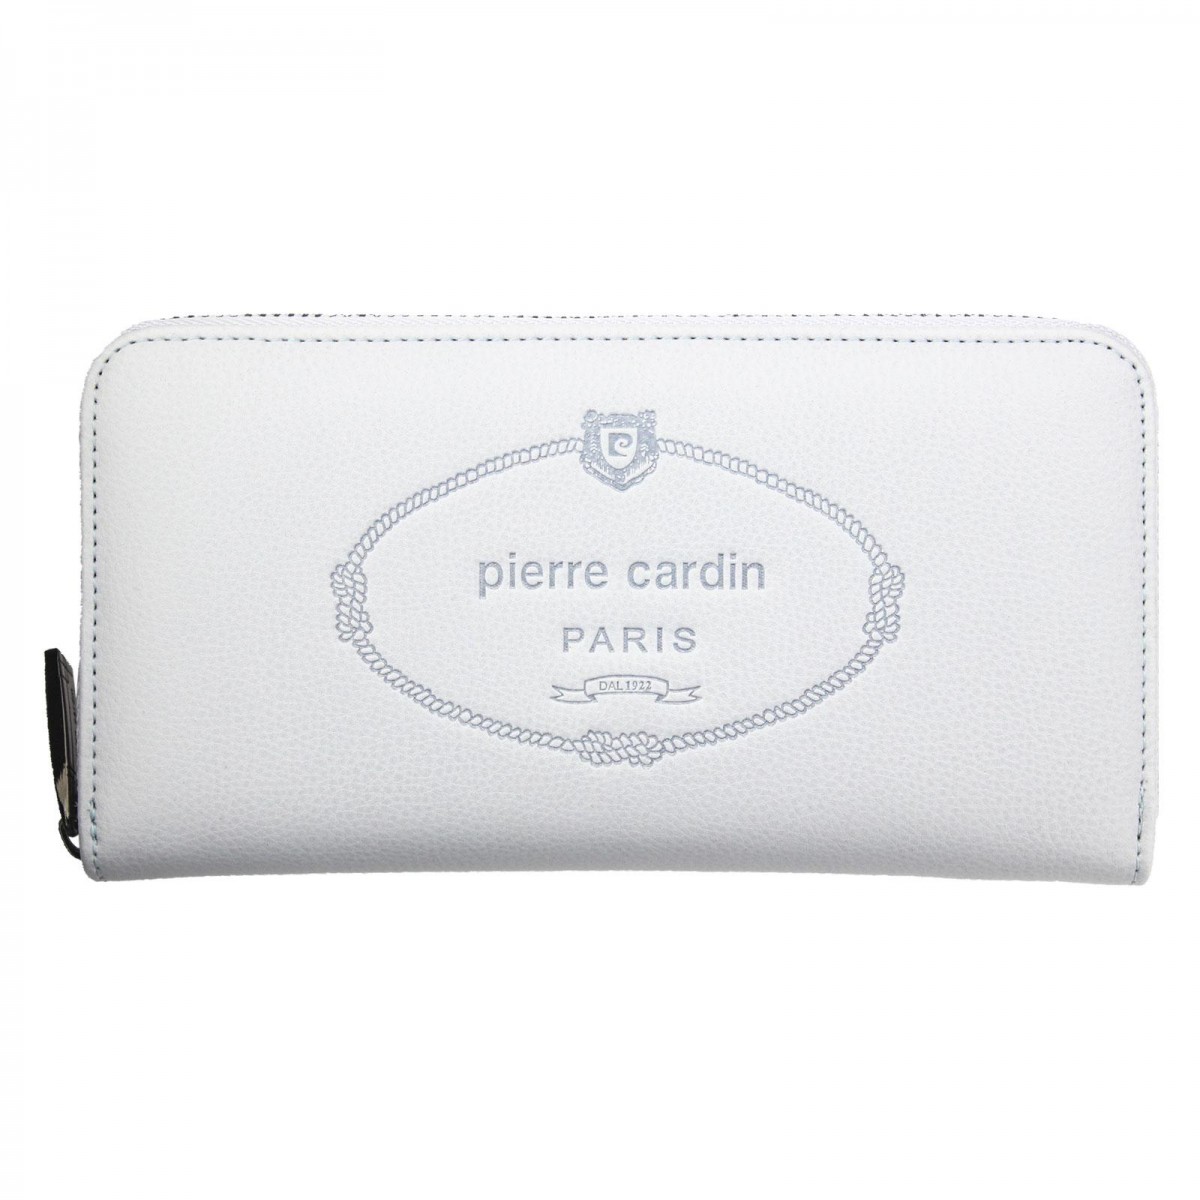 Dámska peňaženka Pierre Cardin LADY01 8822 skl.